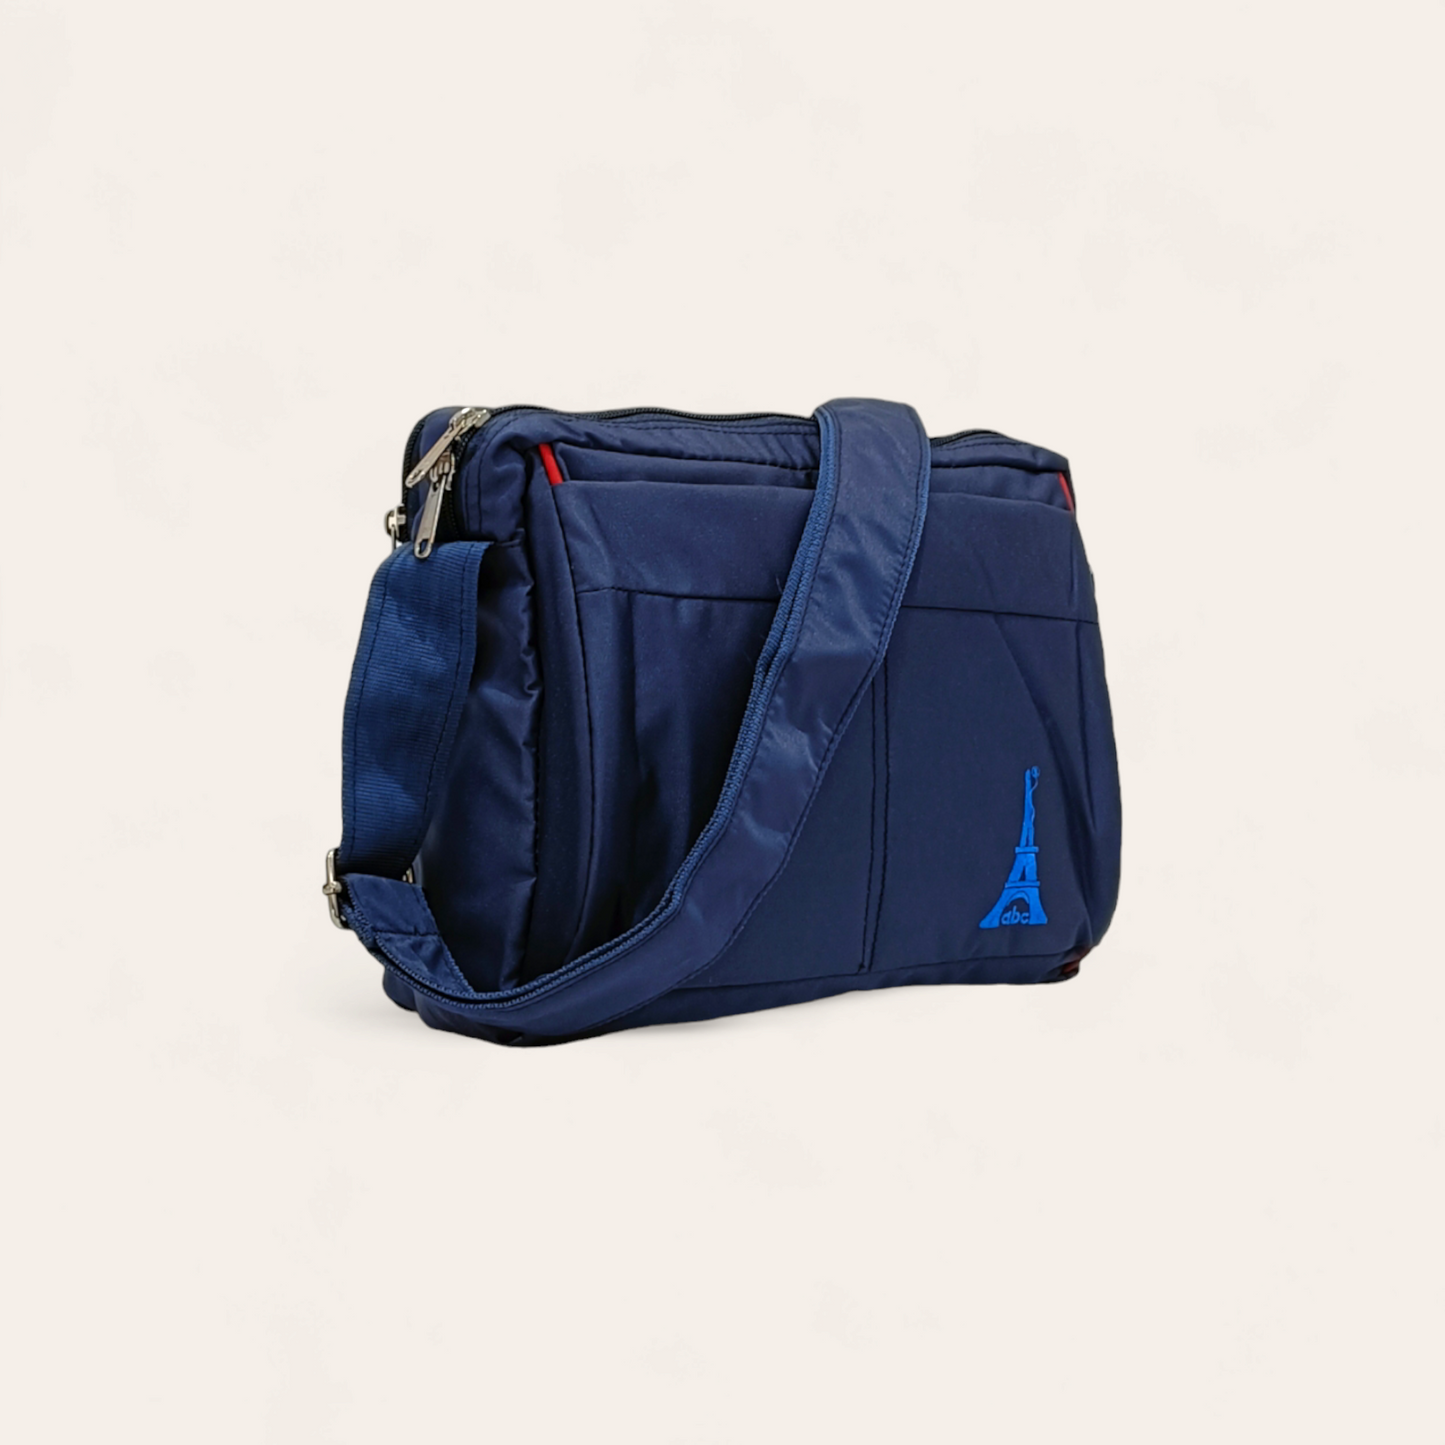 Bestselling medium size unisex side bag pro version, stylish daily use crossbody bag